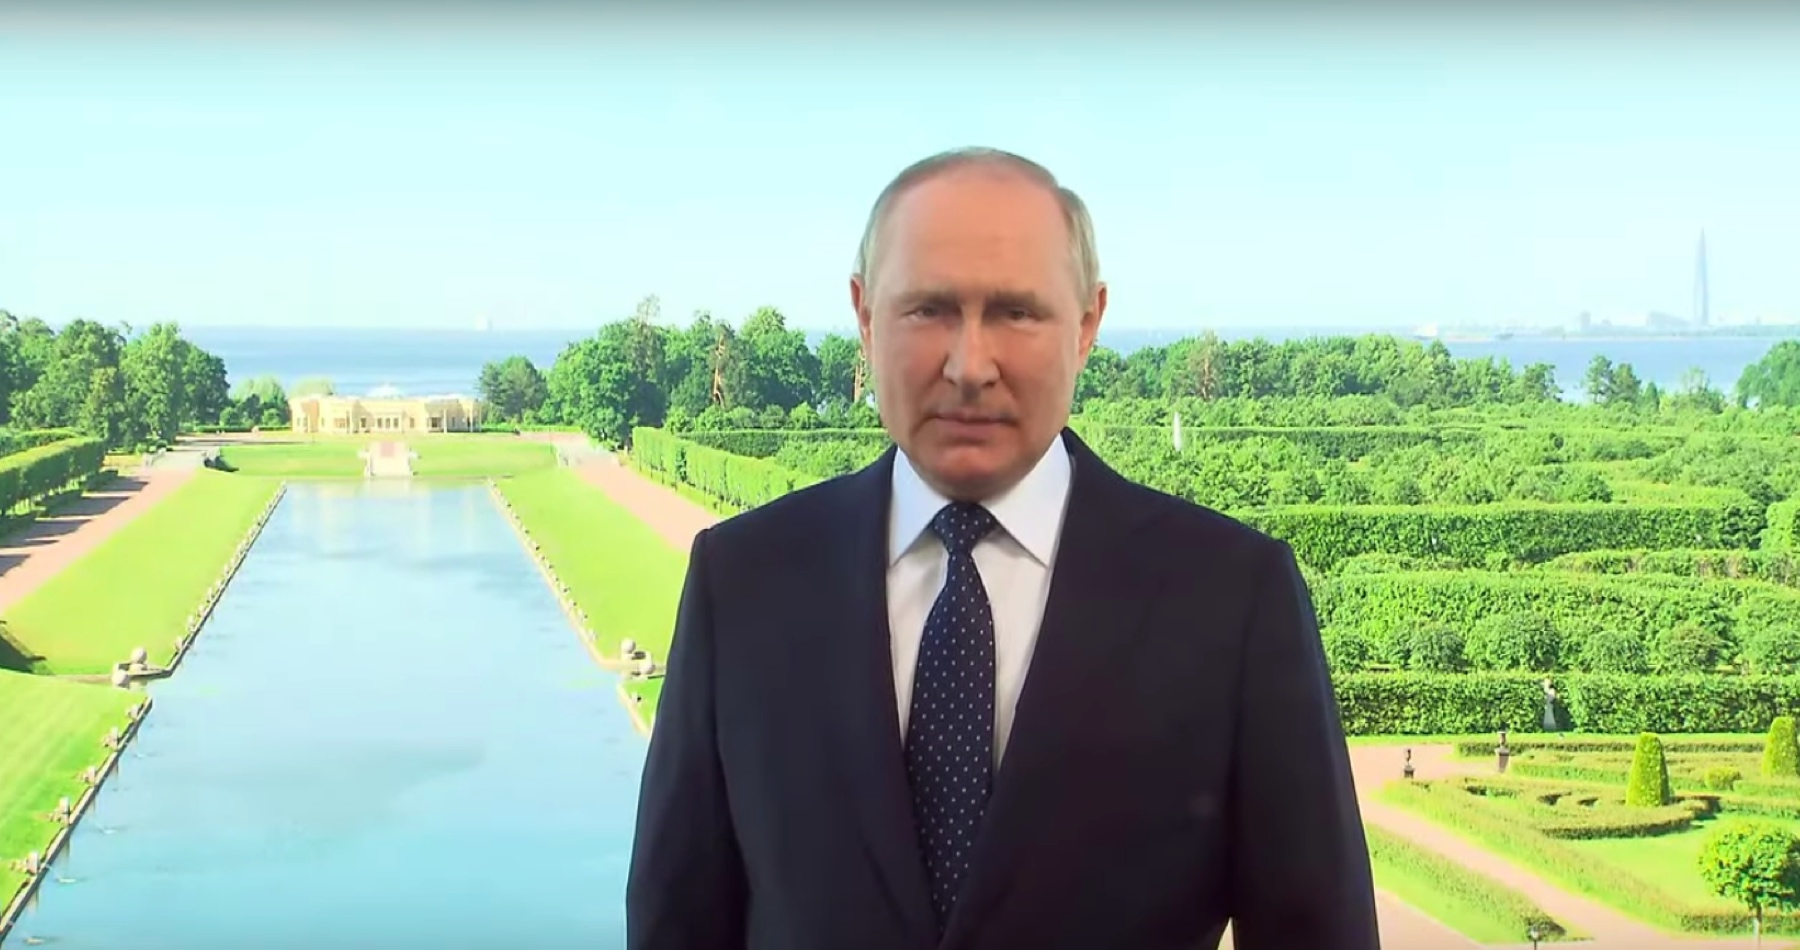 VIDEO: V súčasnosti sa nezvratne vytvára spravodlivejší systém multipolárnych vzťahov medzi štátmi založený na dôslednom dodržiavaní medzinárodného práva. Niektoré štáty sa nechcú zmieriť so stratou svojej dominancie a snažia sa udržať nespravodlivý unipolárny model, vyhlásil Putin